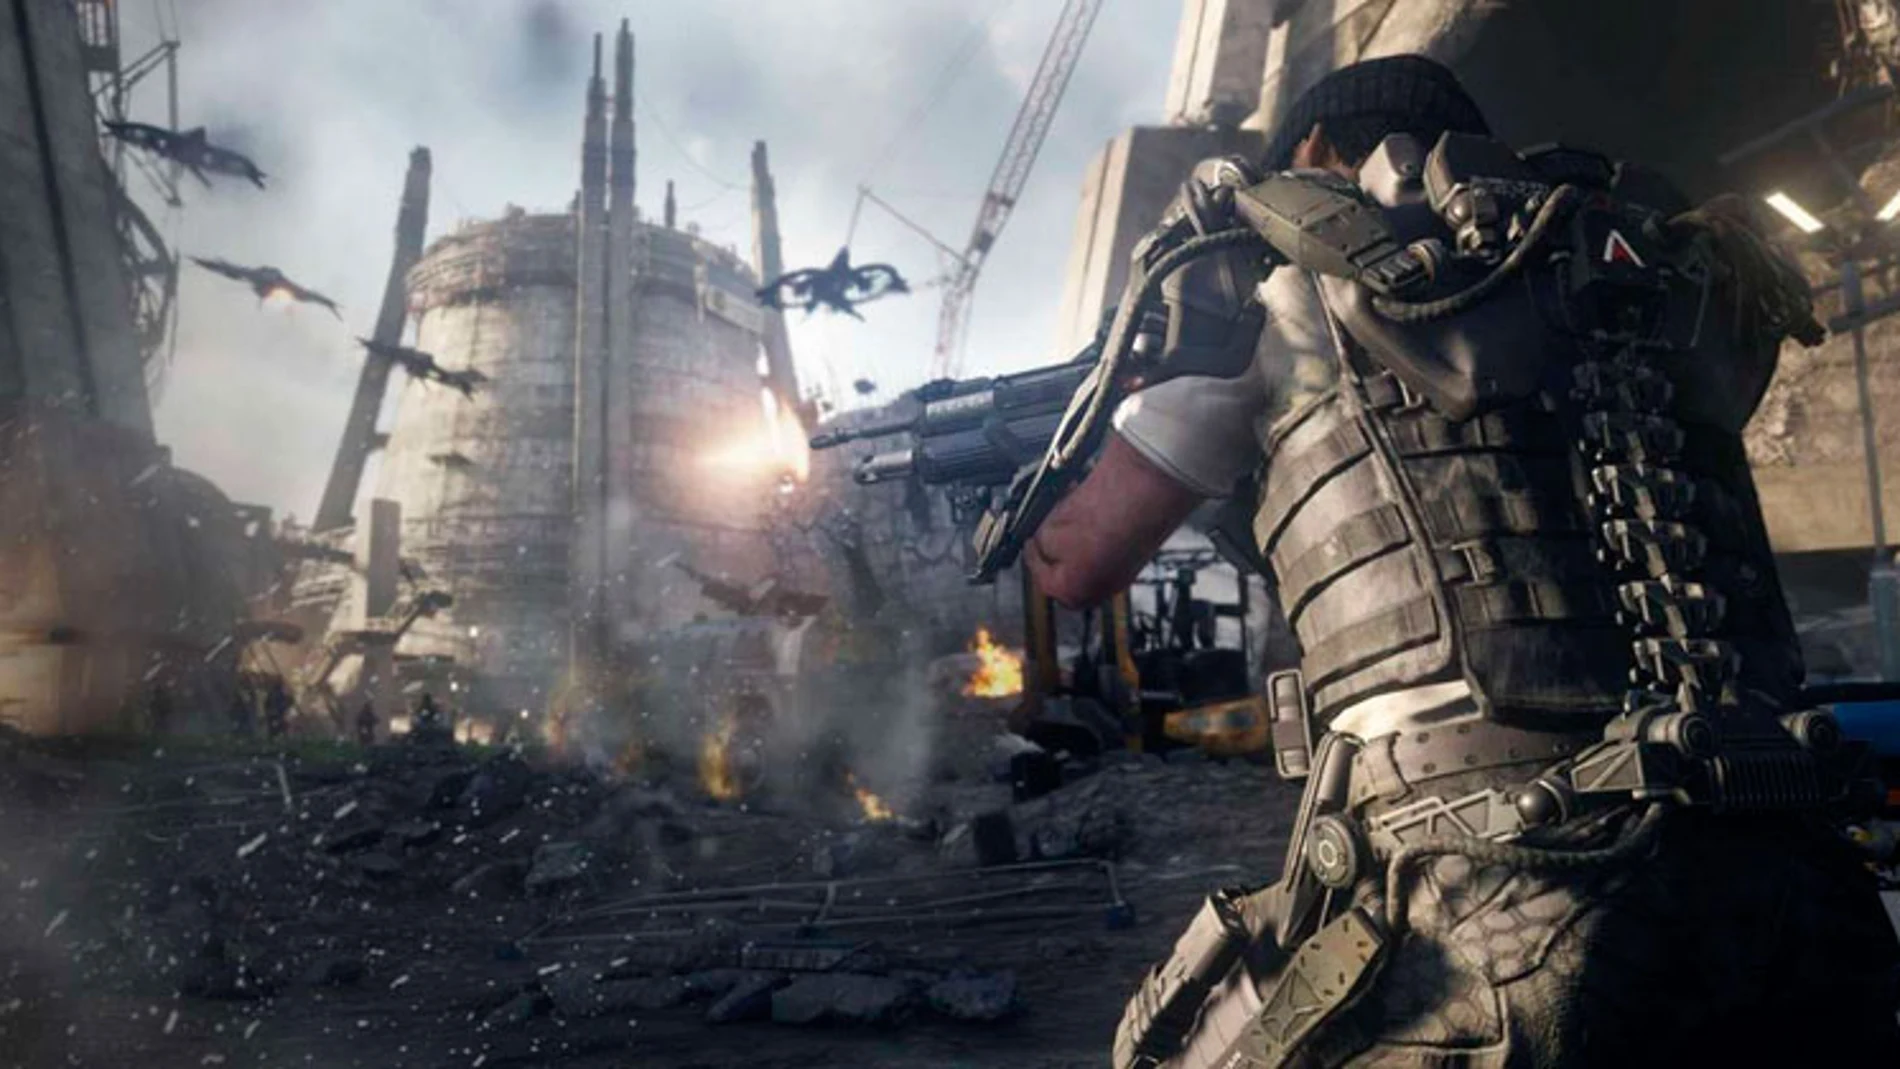 Advanced Warfare abre una nueva era para Call of Duty